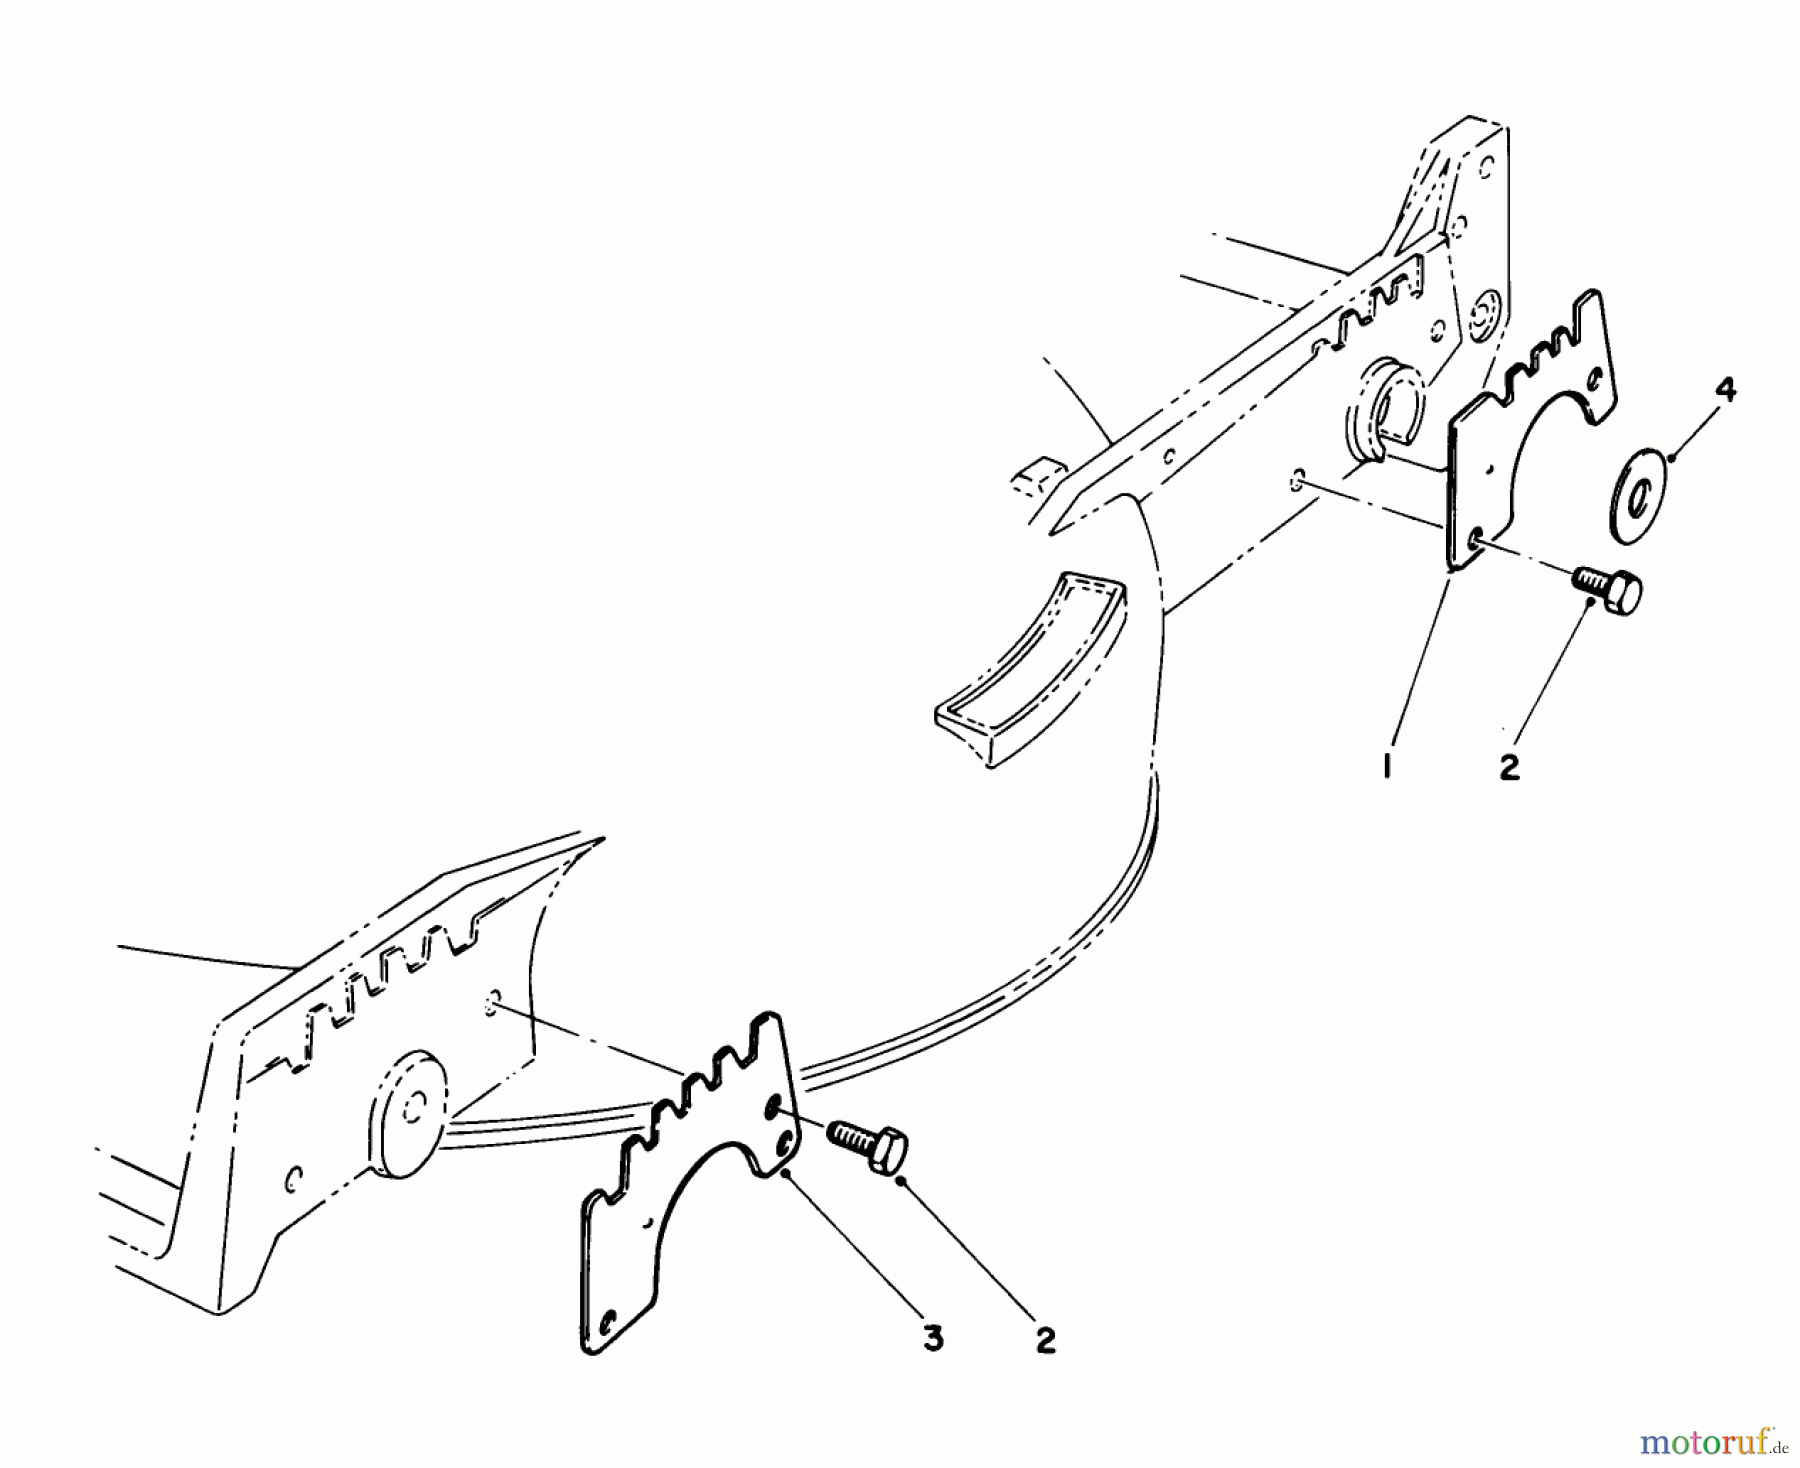  Toro Neu Mowers, Walk-Behind Seite 1 20531 - Toro Lawnmower, 1989 (9000001-9999999) WEAR PLATE KIT MODEL NO. 49-4080 (OPTIONAL)